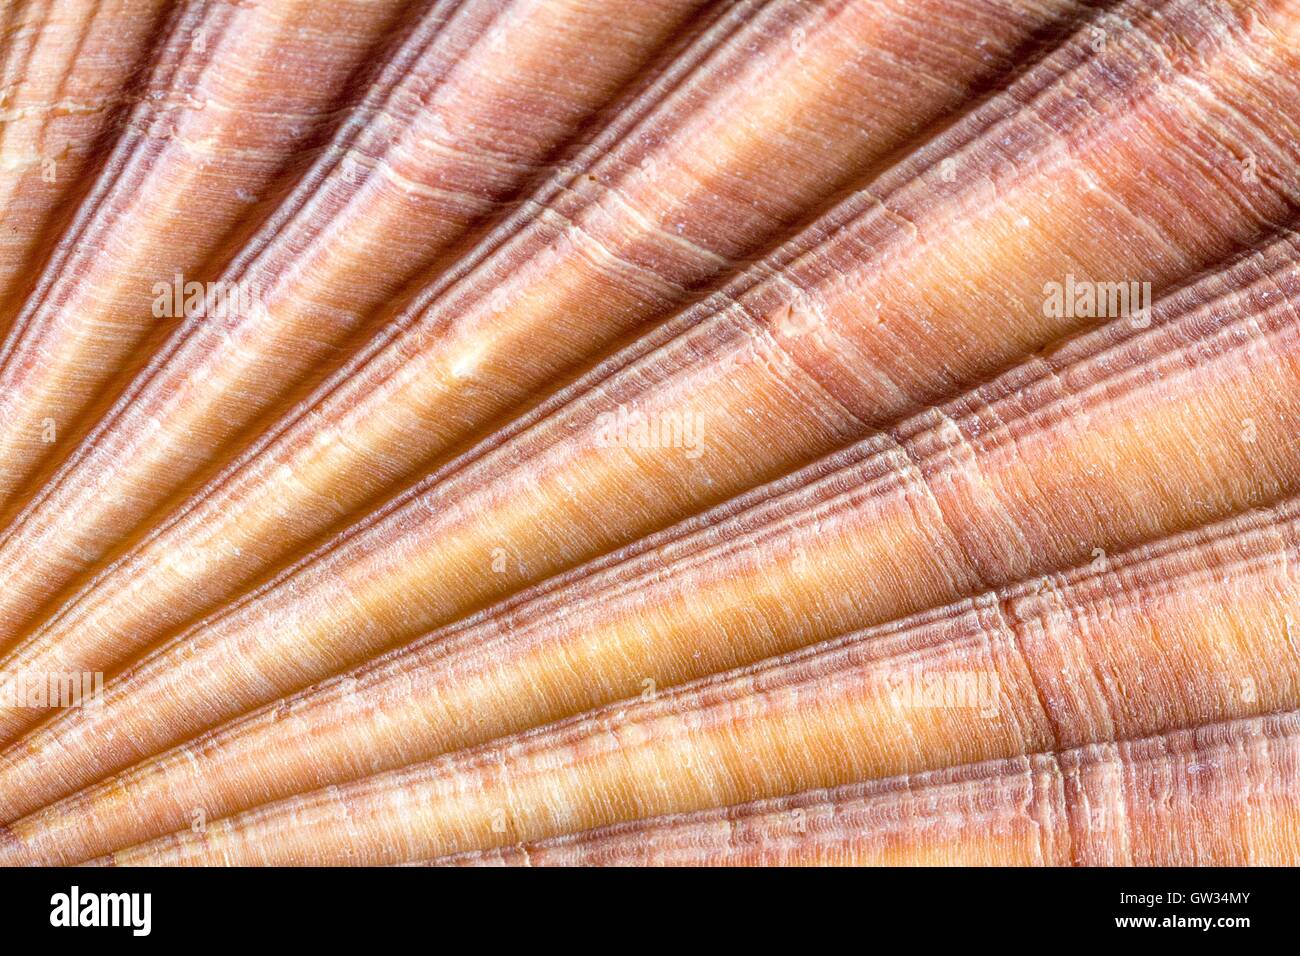 Rot-gerippt, Jakobsmuschel, Macrophotograph. Die Shell eine rot gerippt Jakobsmuschel (Aequipecten Glyptus), ein marine zweischaligen Weichtieren. Schalen von Muscheln bestehen aus zwei artikulierenden Teile oder Ventile. Horizontale Objektgröße von dieser Bildausschnitt: 15 mm. Stockfoto